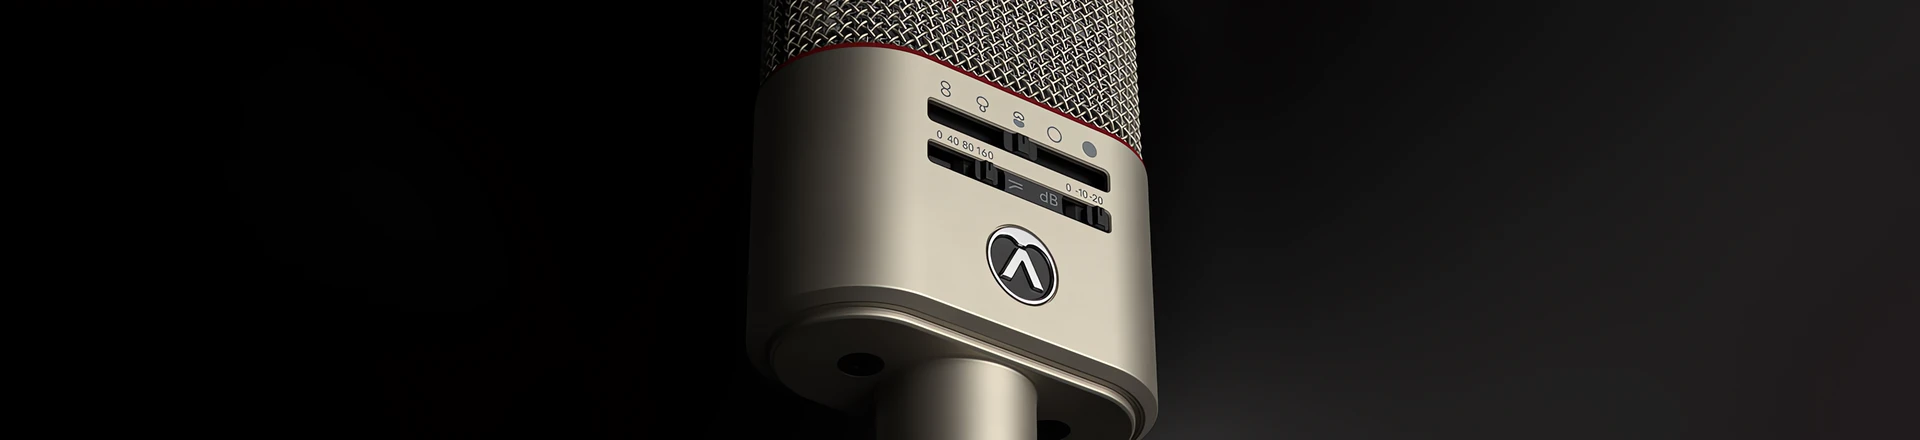 Austrian Audio: OCR8 Bluetooth Dongle gratis przy zakupie OC818 Studio Set